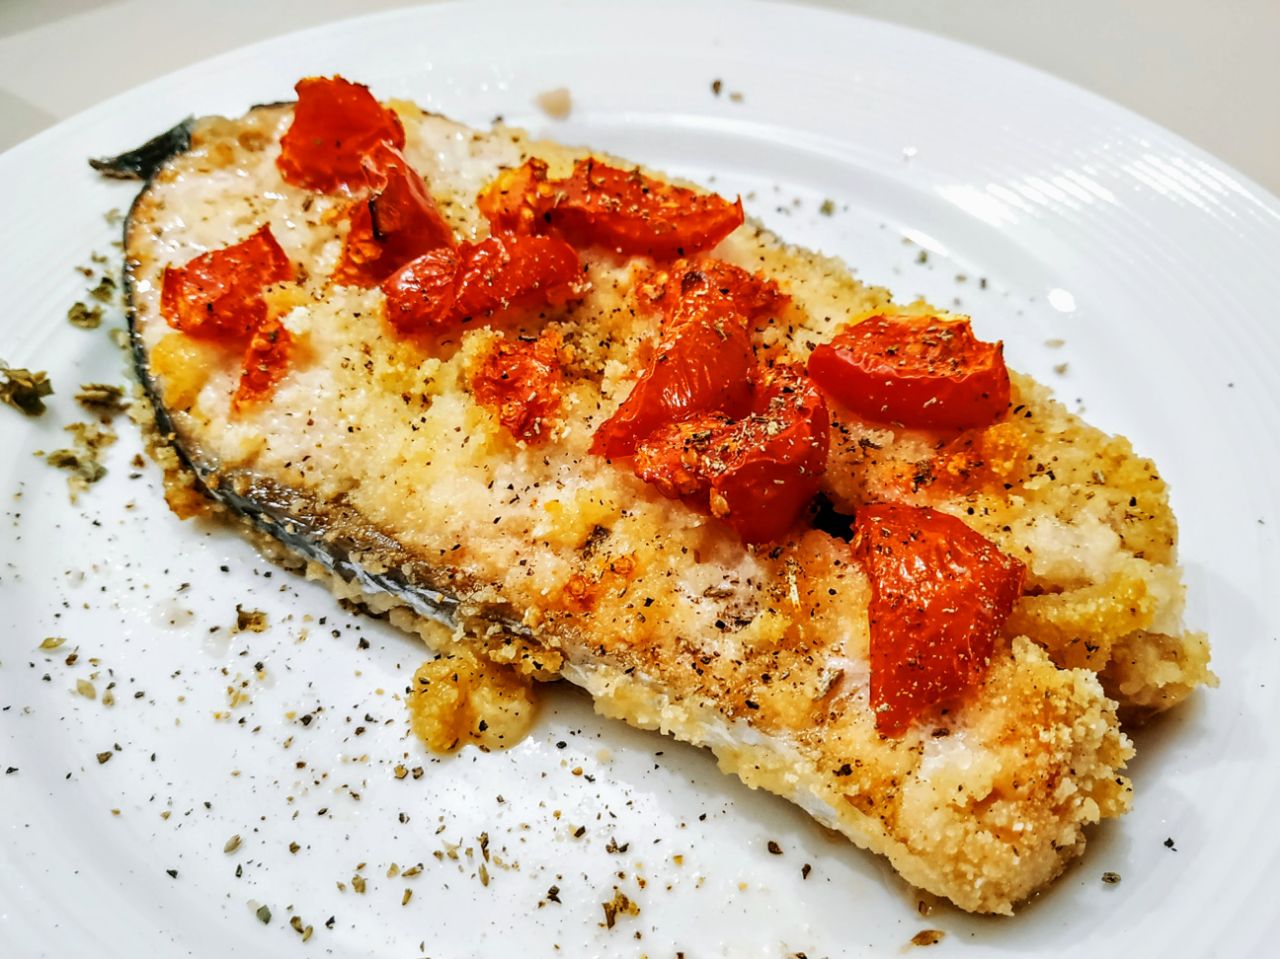 Secondi piatti a base di pesce: trancio di salmone al forno con pane grattugiato e pomodori ciliegini!